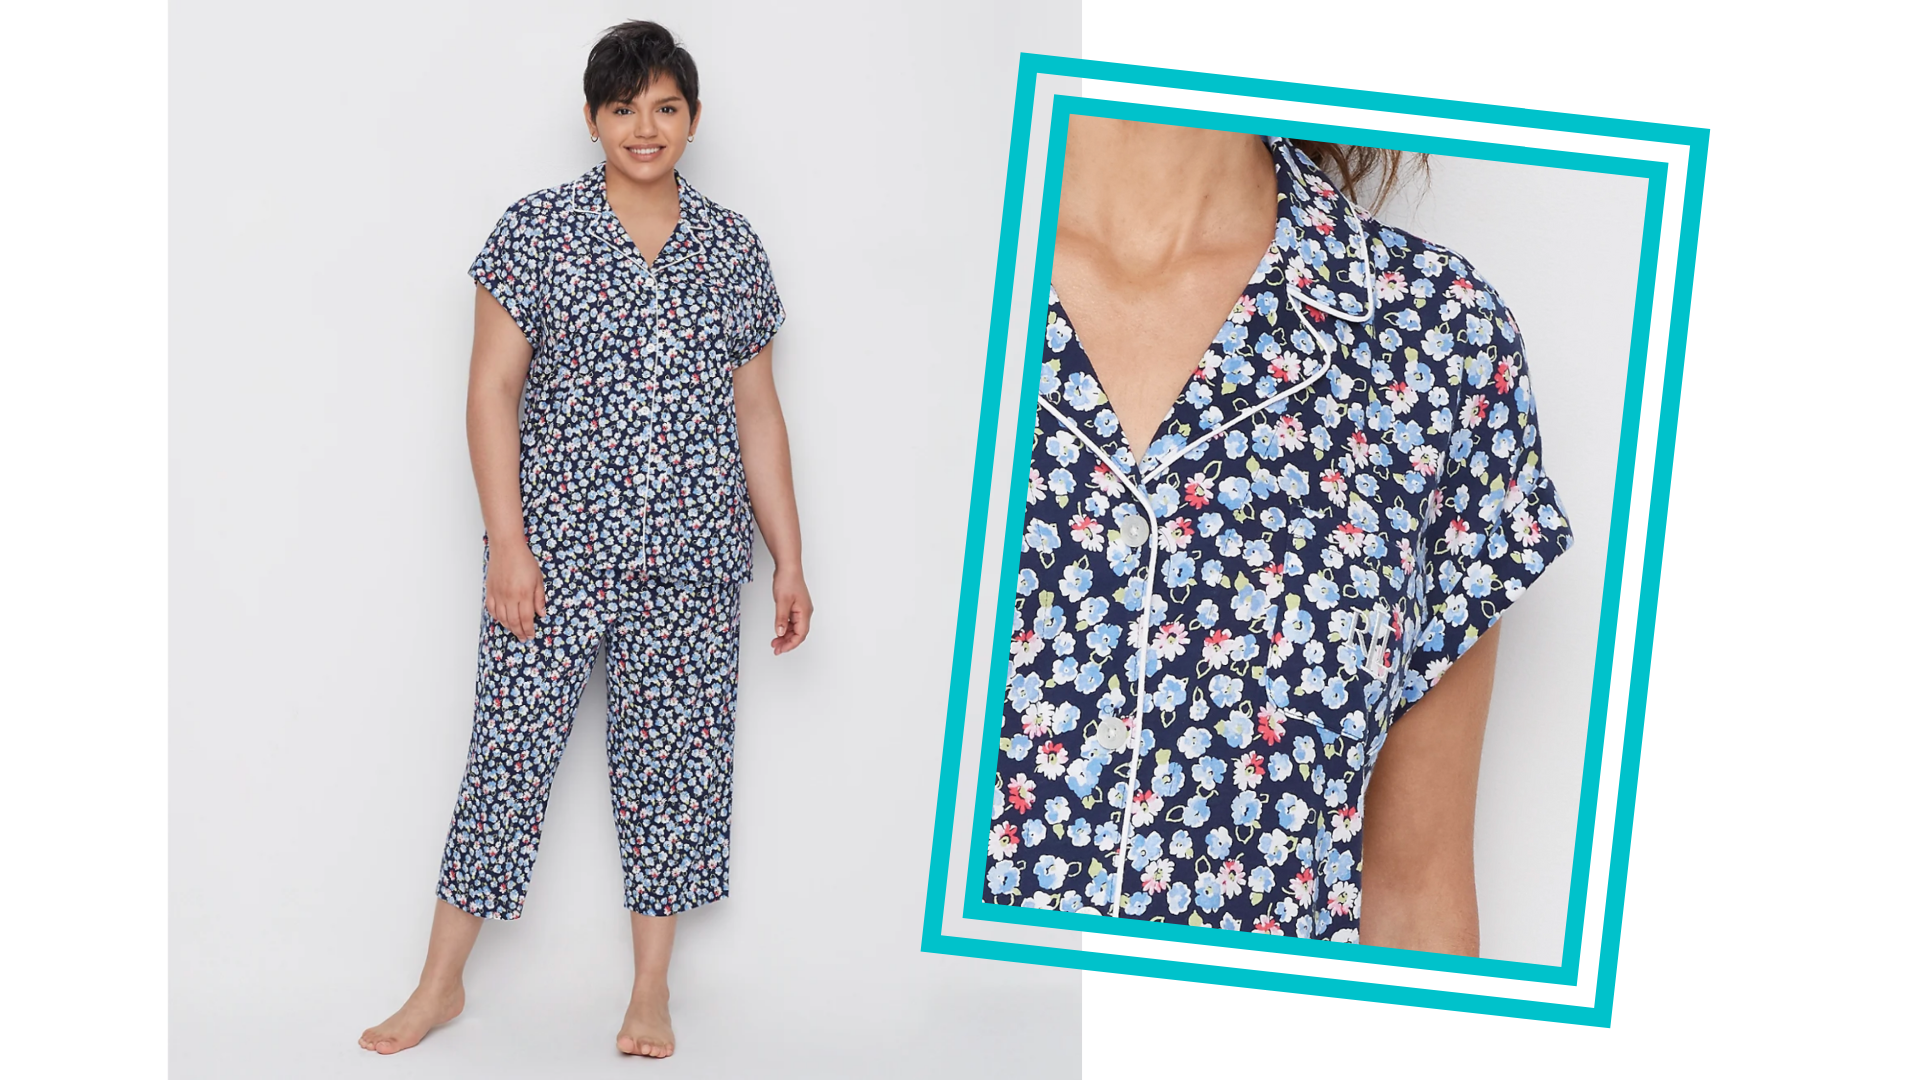 ZERDOCEAN Women's Plus Size Pajamas Set Soft Sleepwear Long Sleeve Button Down Nightwear with Long Pants Pjs Lounge Sets